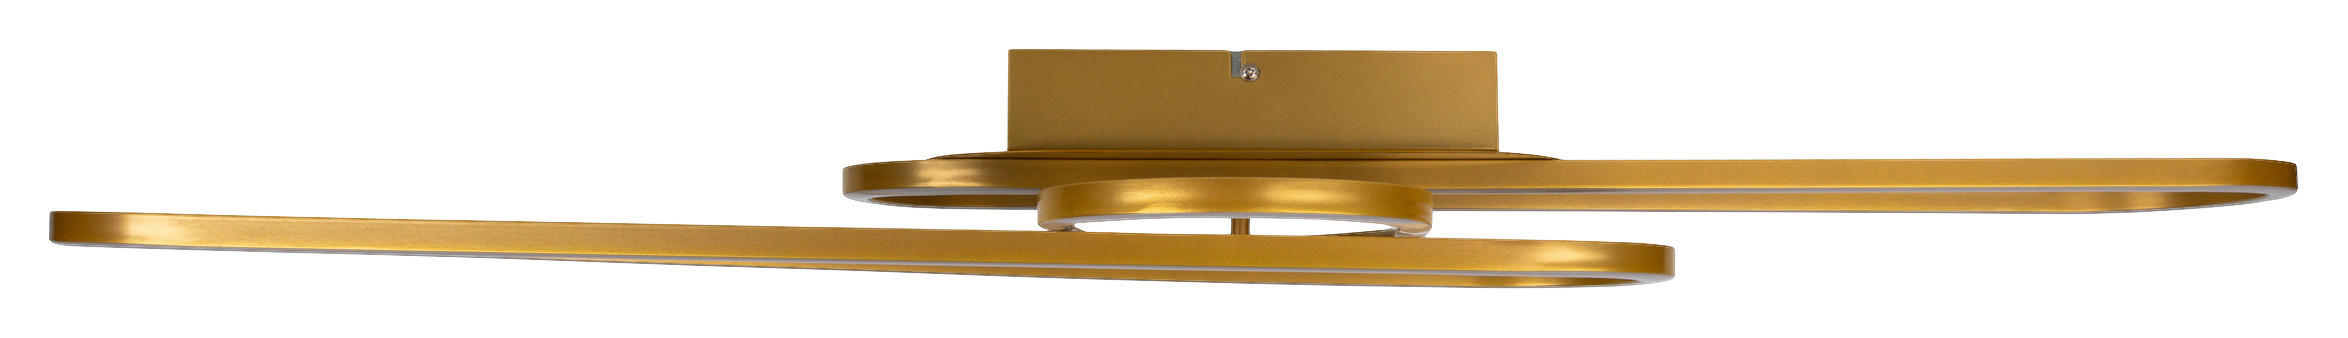 Näve Leuchten Deckenleuchte 1405858 gold Metall Kunststoff B/H/T: ca. 42x10x103 cm null 3 Brennstellen